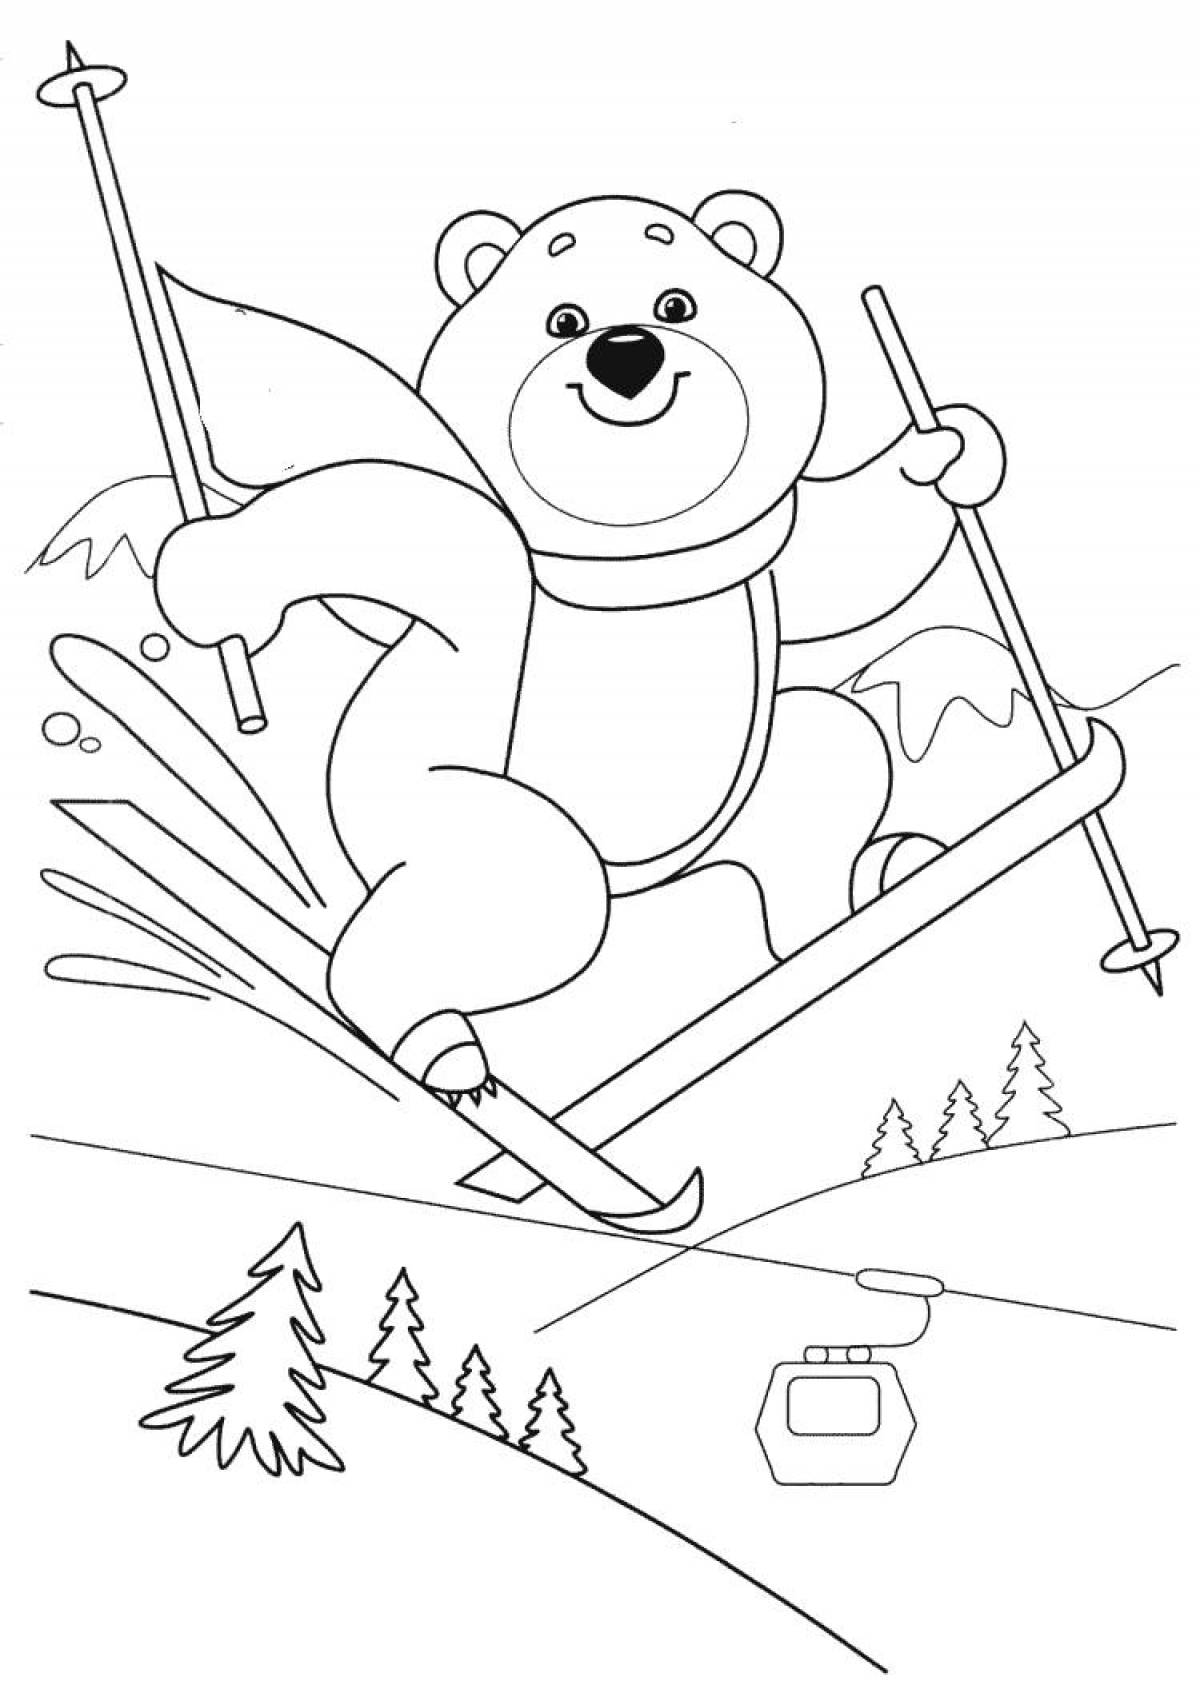 Bear on skis